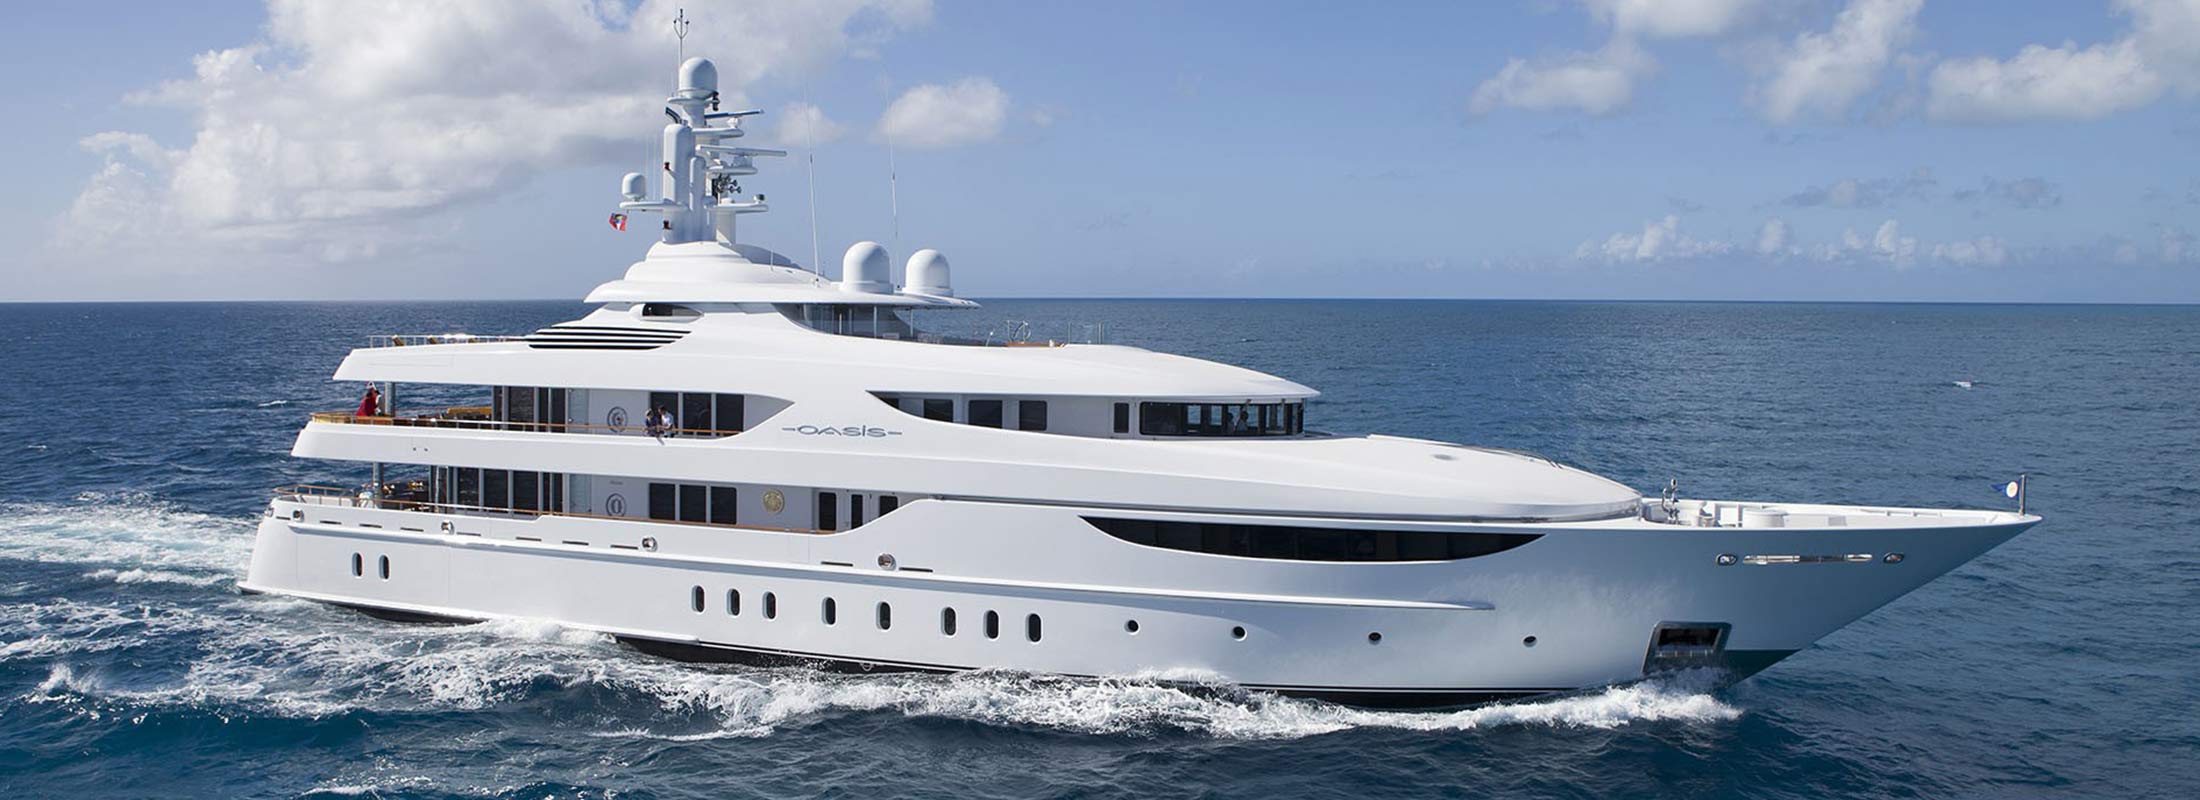 Oasis Motor Yacht for Charter Mediterranean slider 1